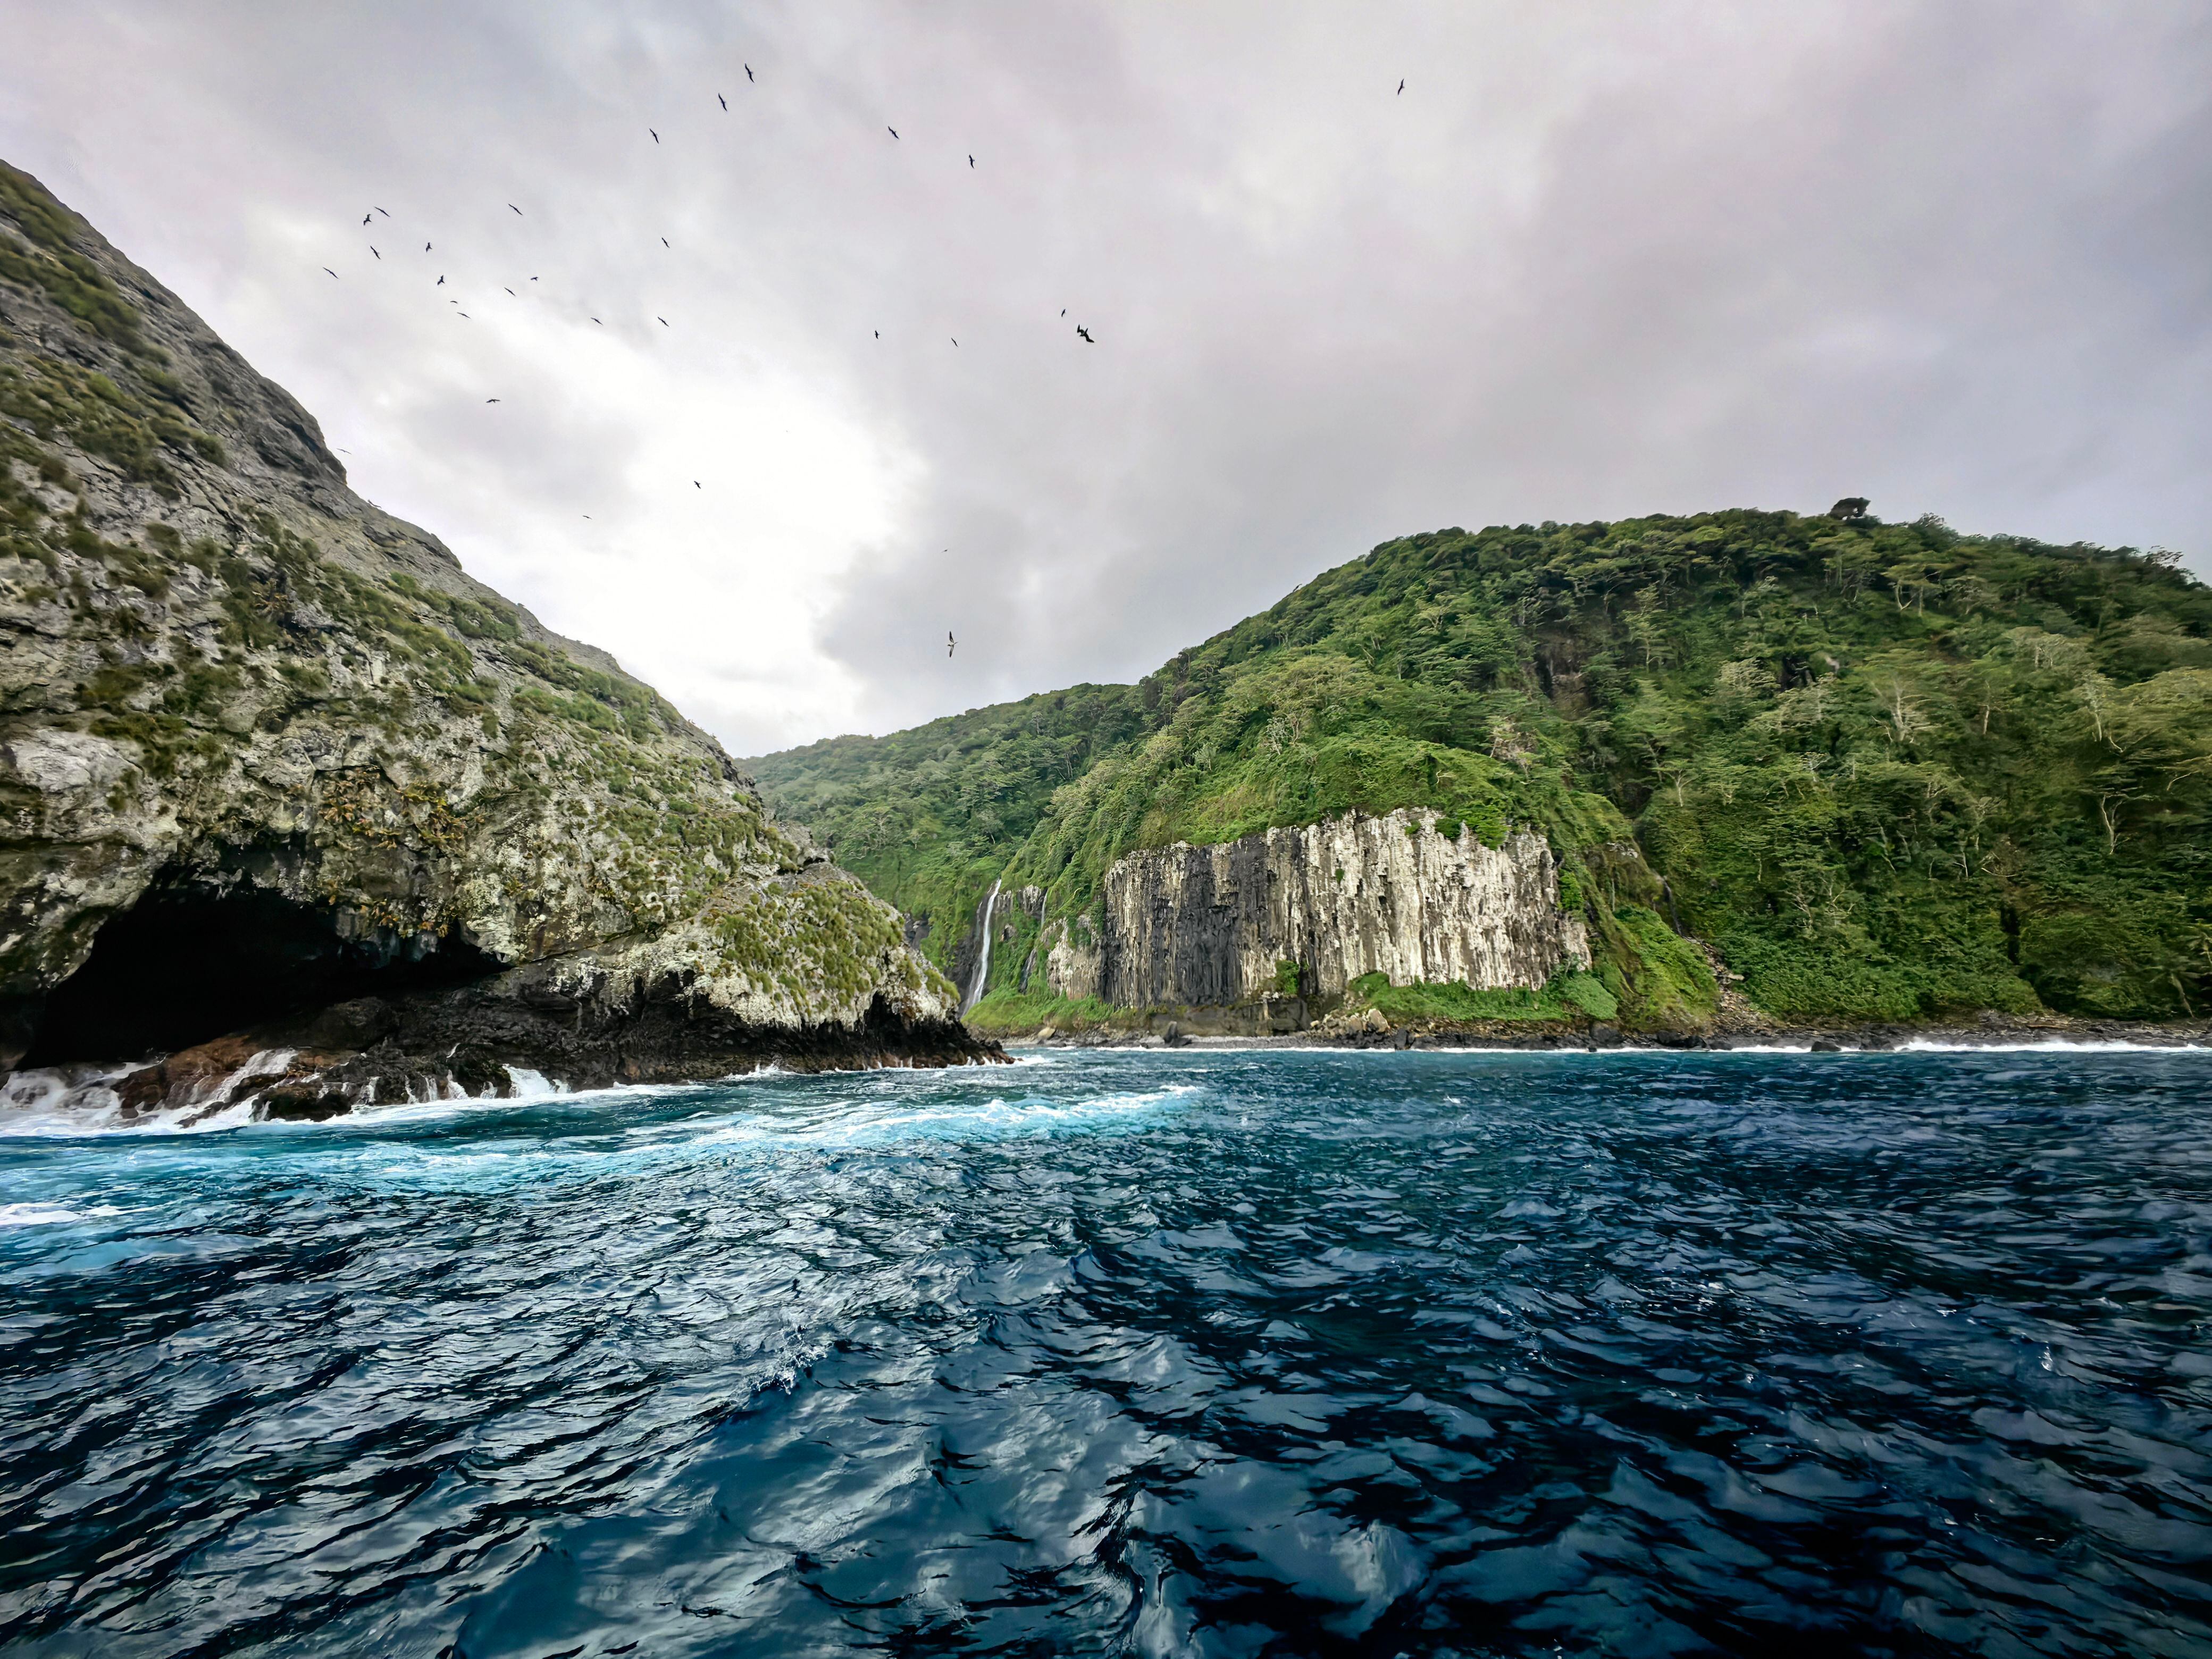 El Parque Nacional Isla del Coco, creado en 1978, fue declarado Sitio Natural Patrimonio de la Humanidad en 1997, por la UNESCO. Foto: John Durán.